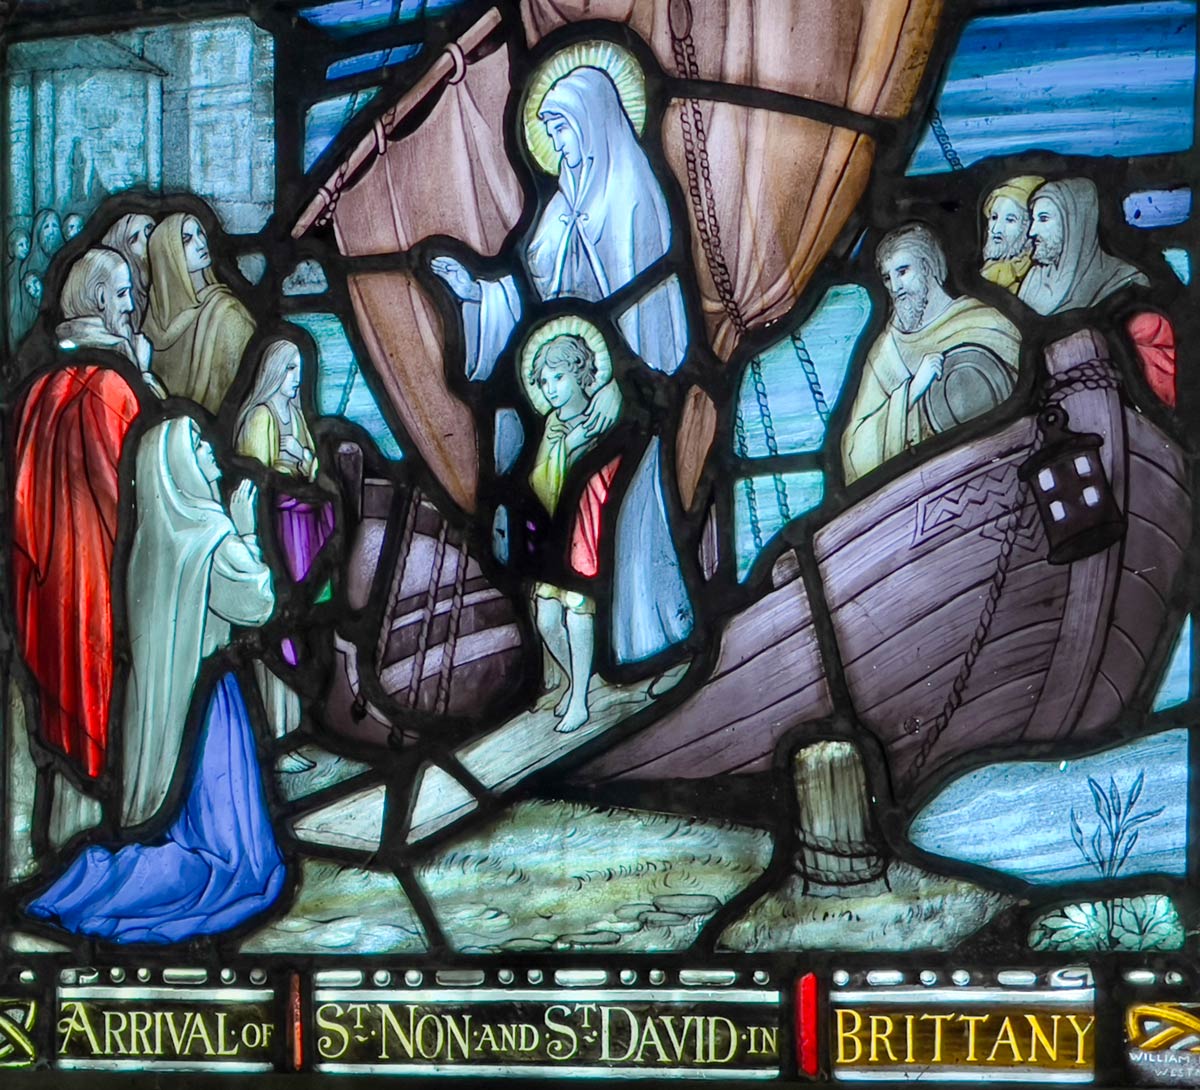 ब्रिटनी, सेंट नॉन चैपल, सेंट डेविड में सेंट नॉन और सेंट डेविड के आगमन को दर्शाती कांच की खिड़की